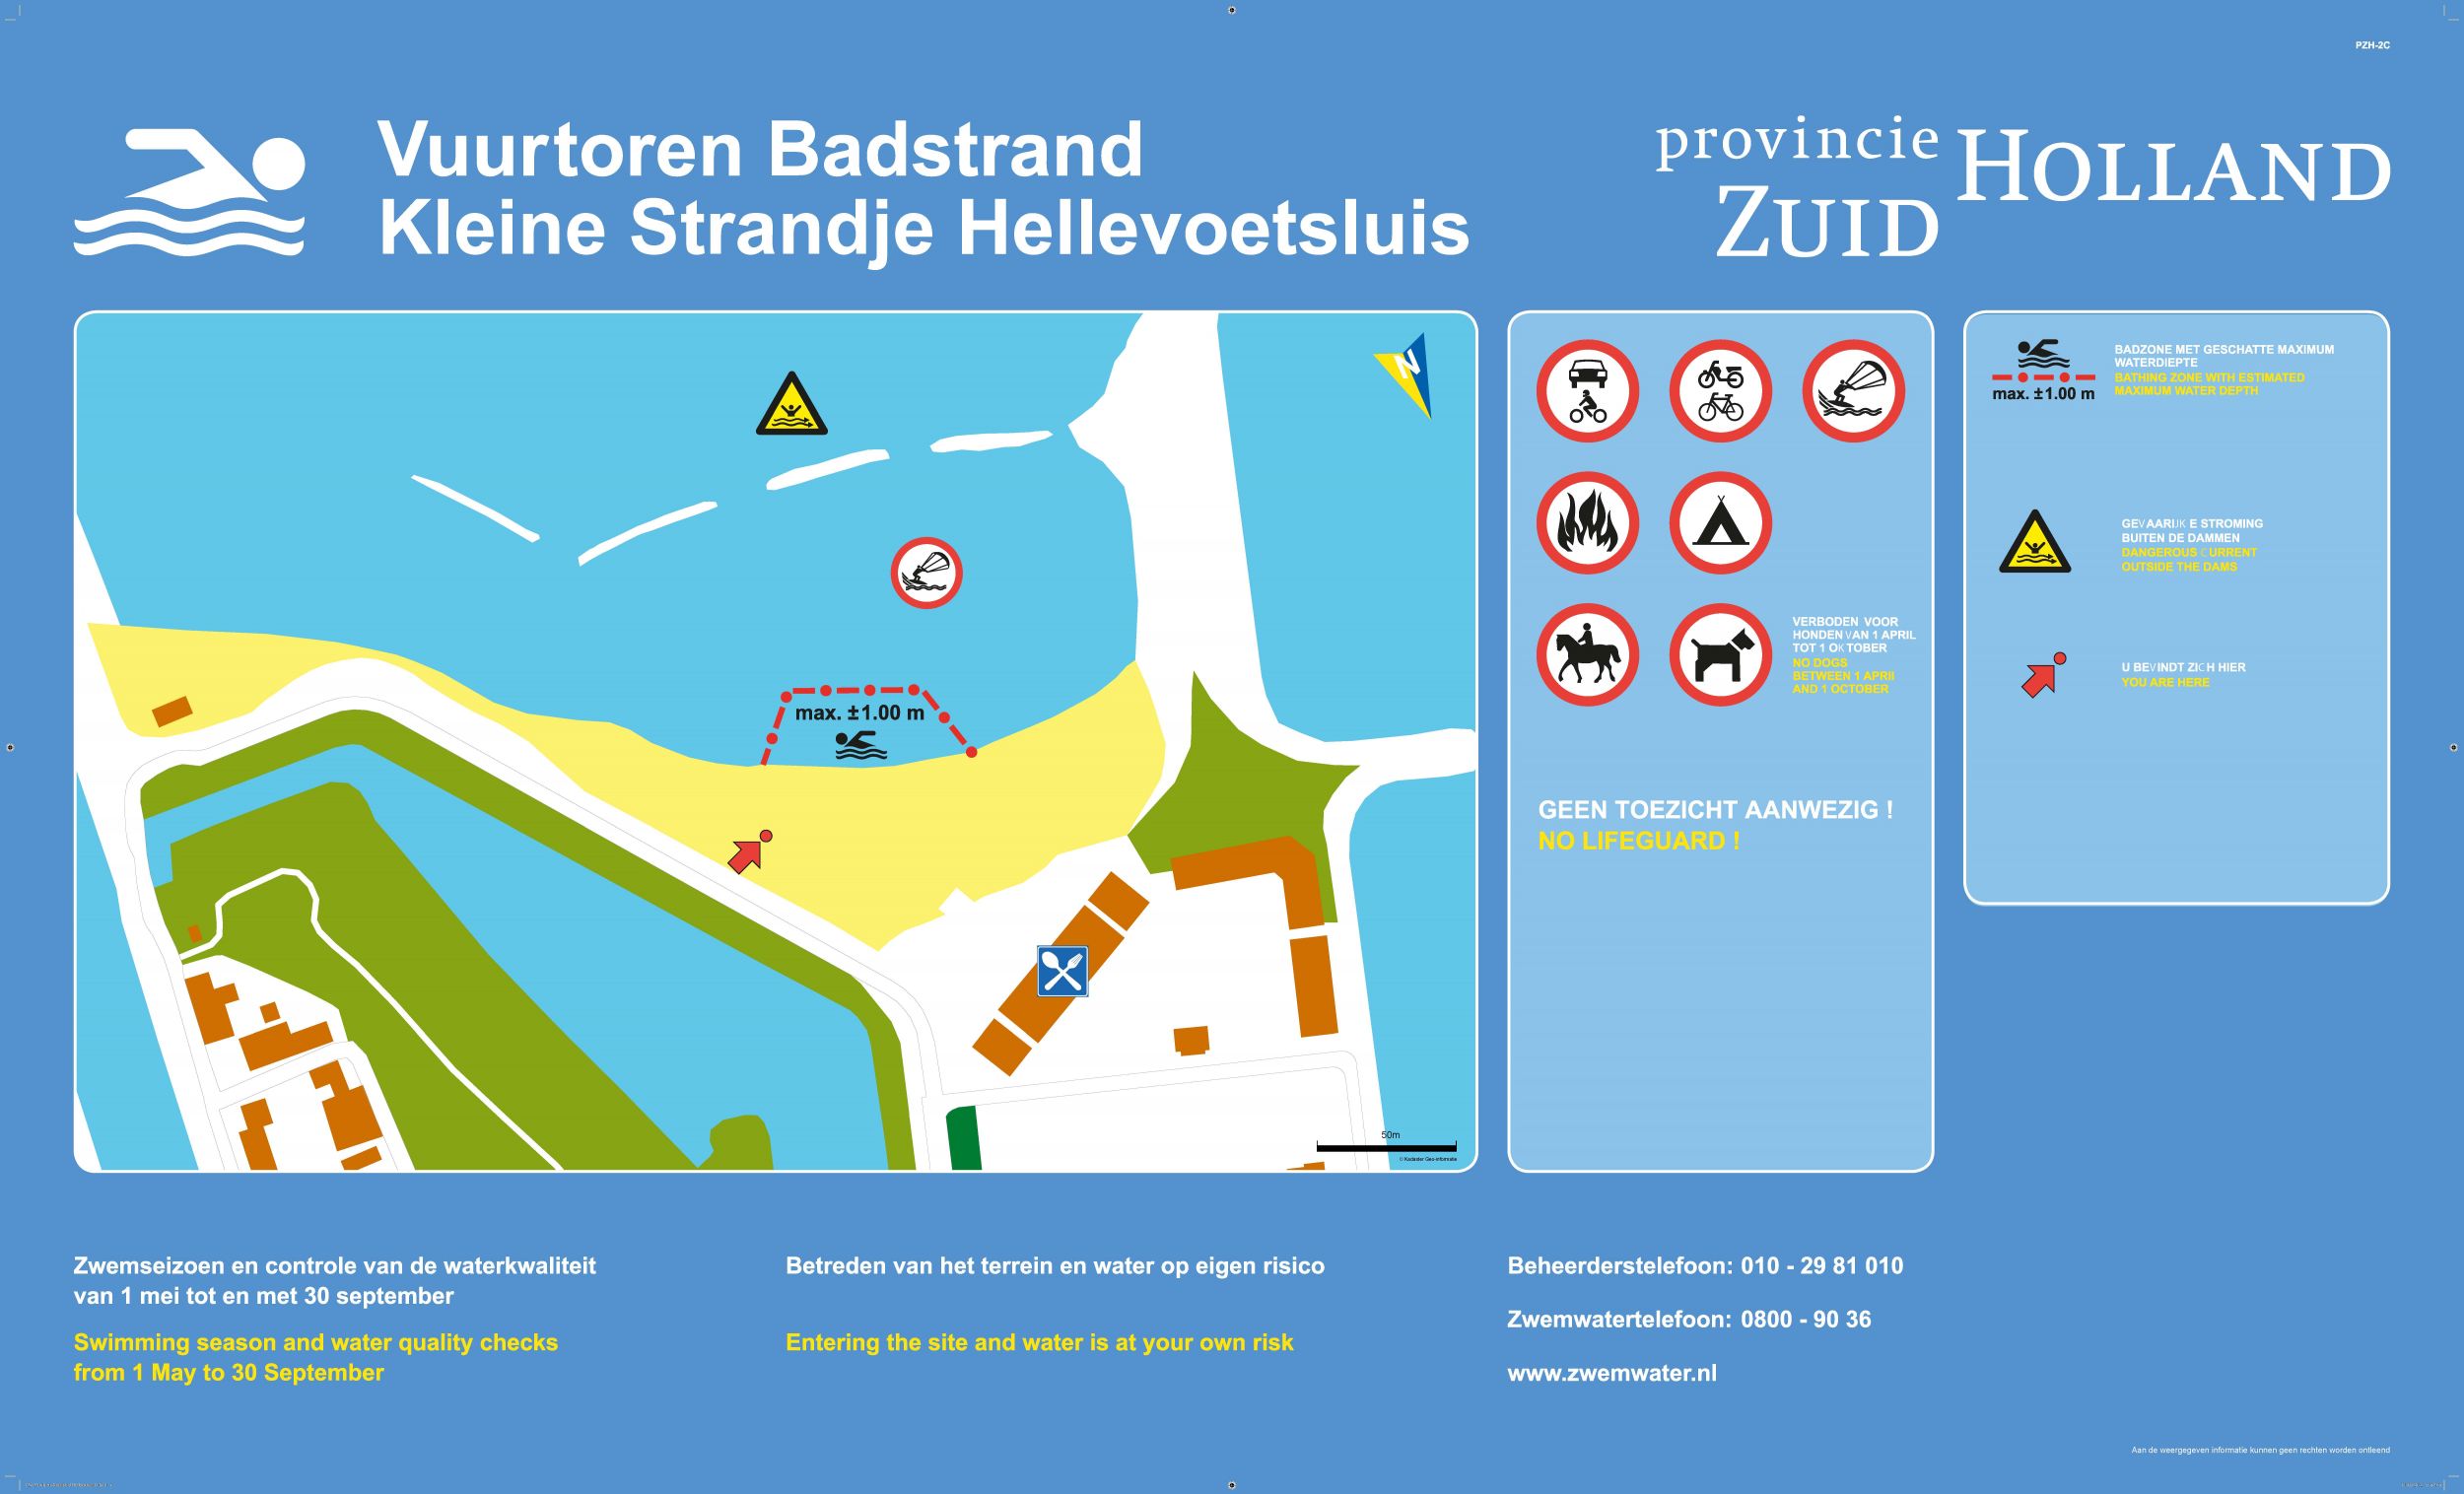 Het informatiebord bij zwemlocatie Vuurtoren Badstrand Hellevoetsluis